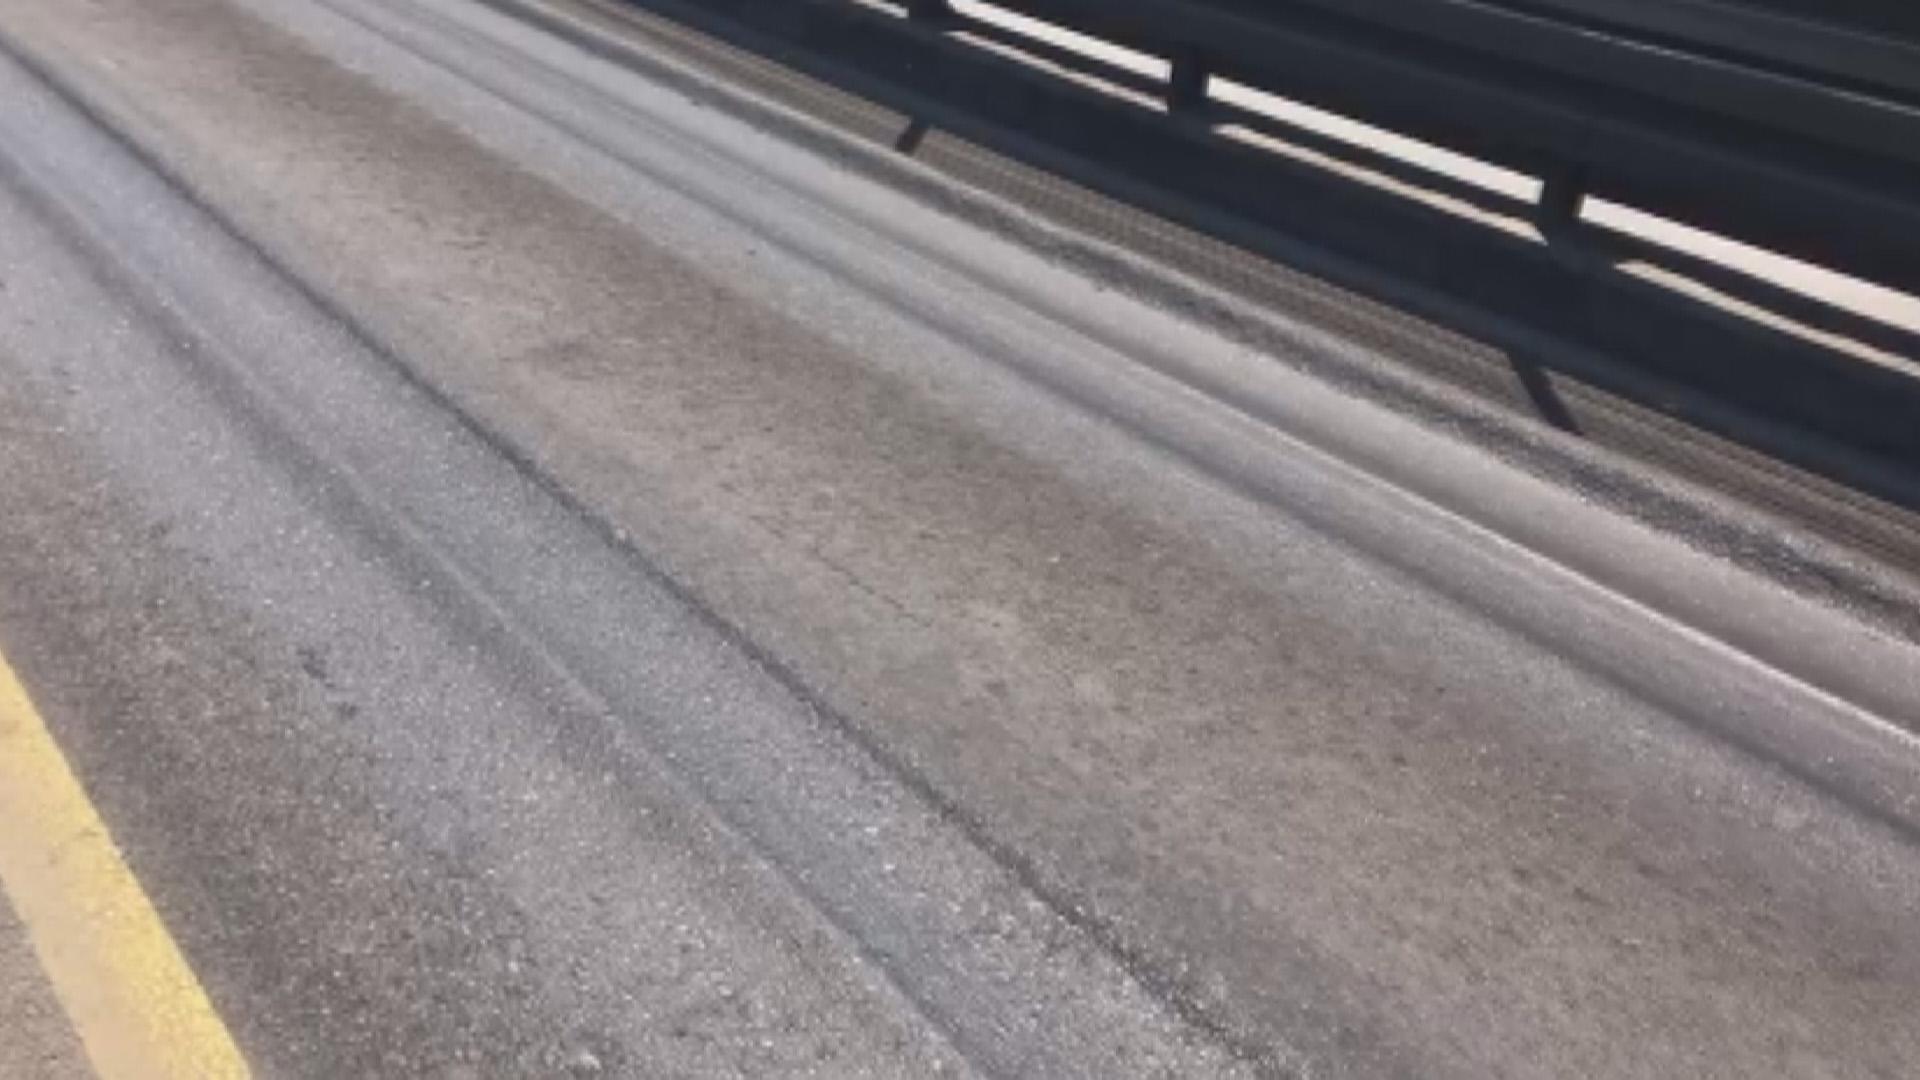 Metrobüs yolunda şaşırtan görüntü: Aşırı sıcaktan asfalt eridi